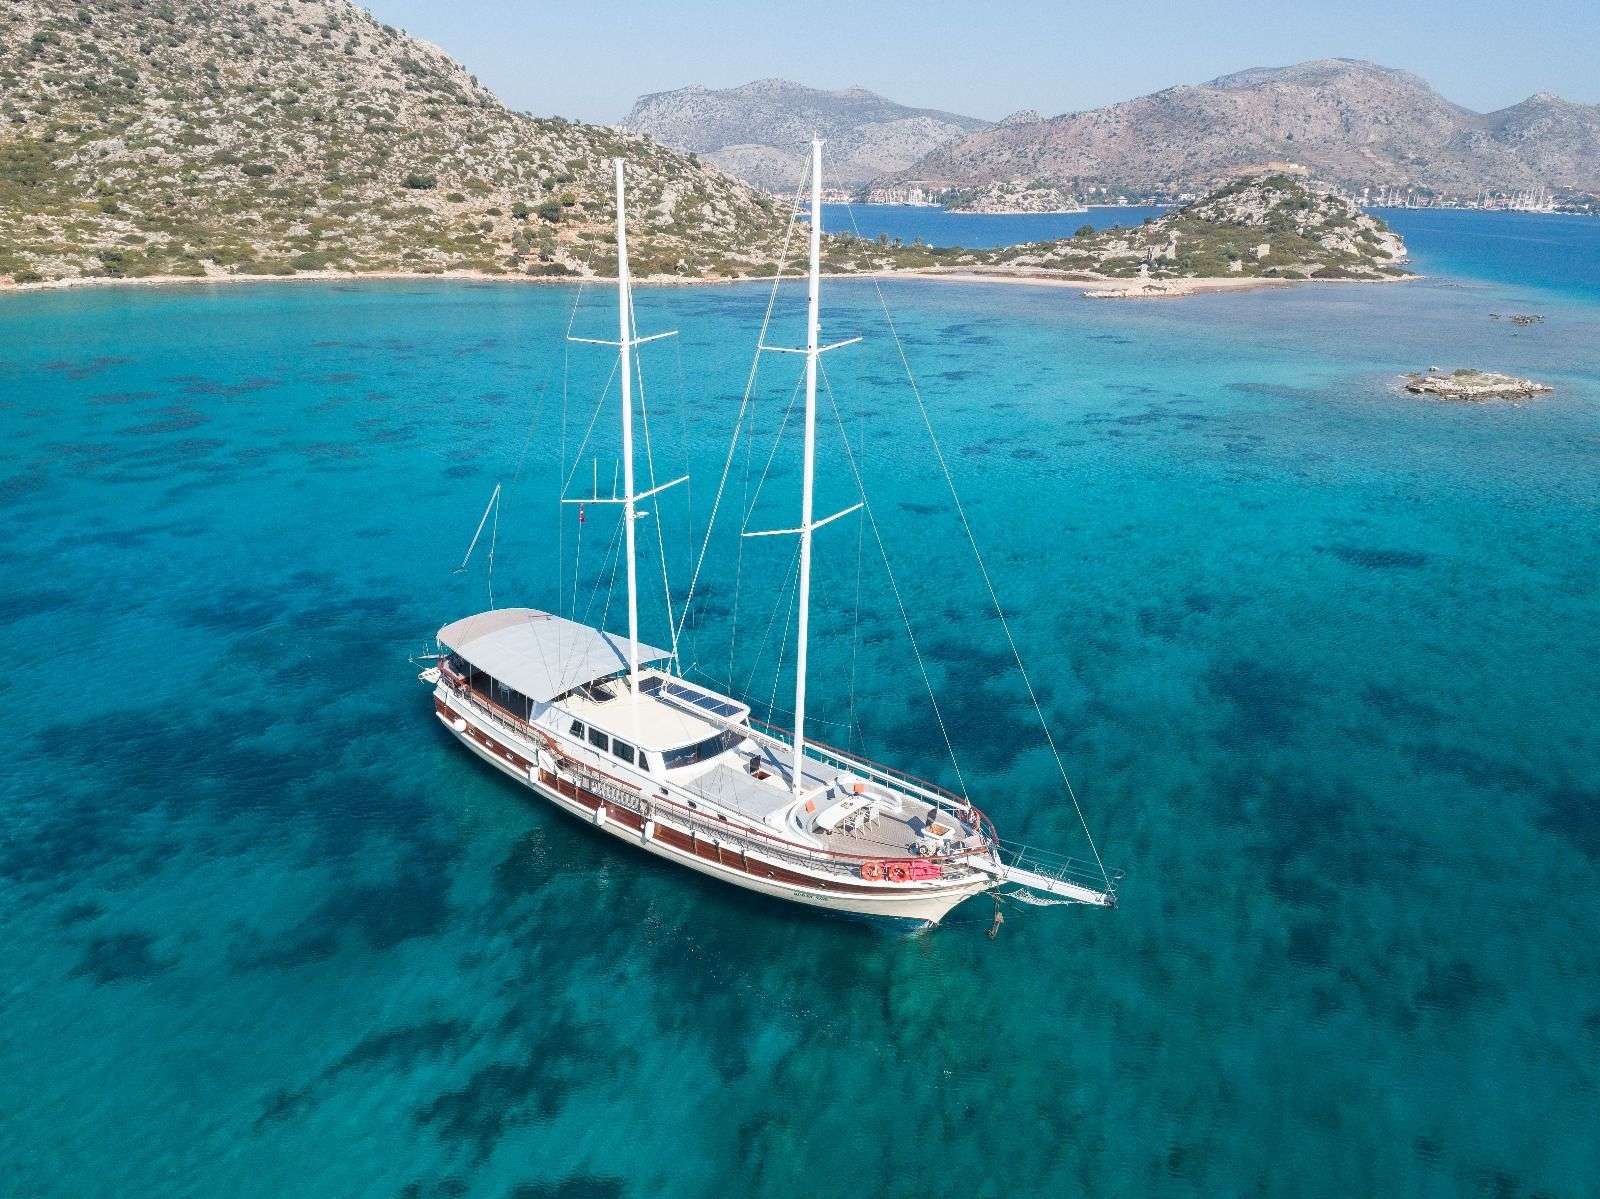 koray ege - Superyacht charter worldwide & Boat hire in Greece & Turkey 2